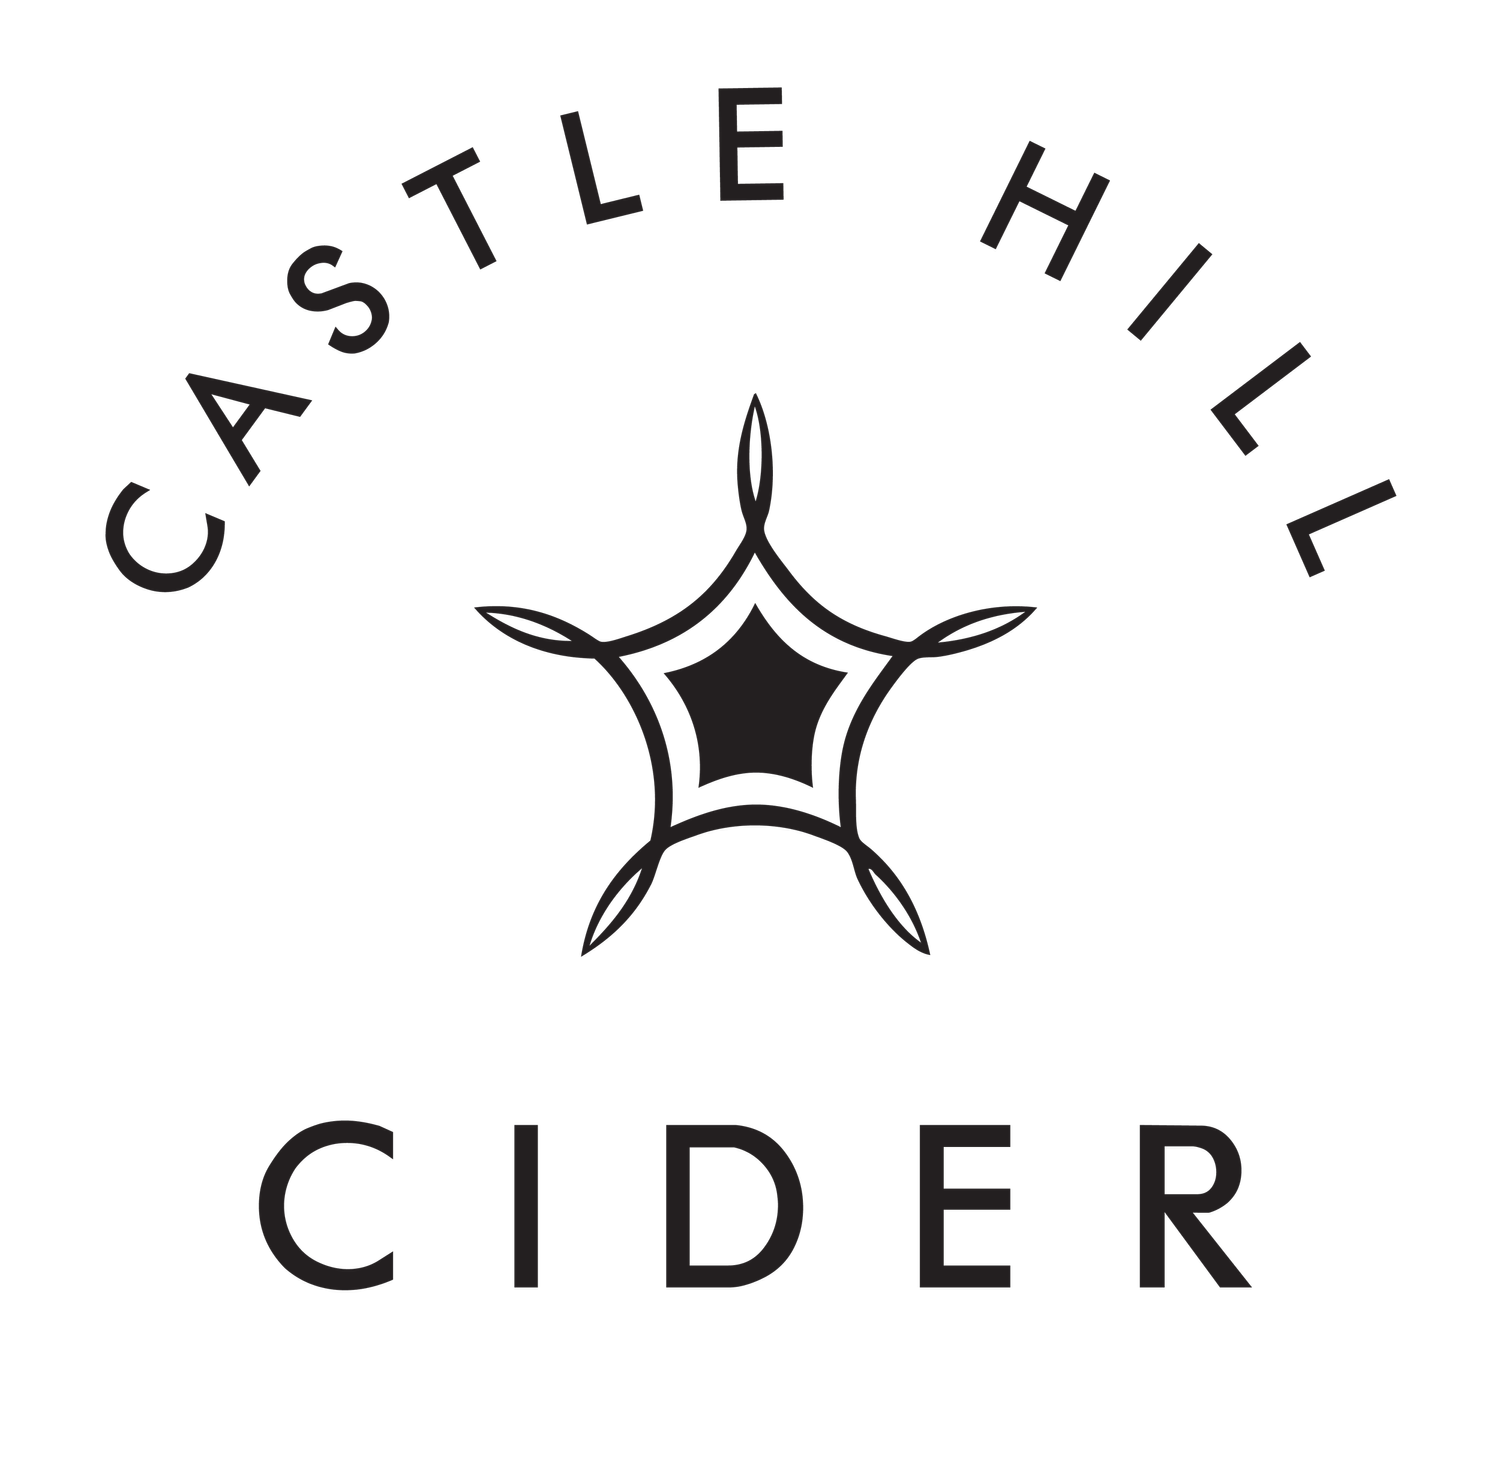 Castle Hill Cider